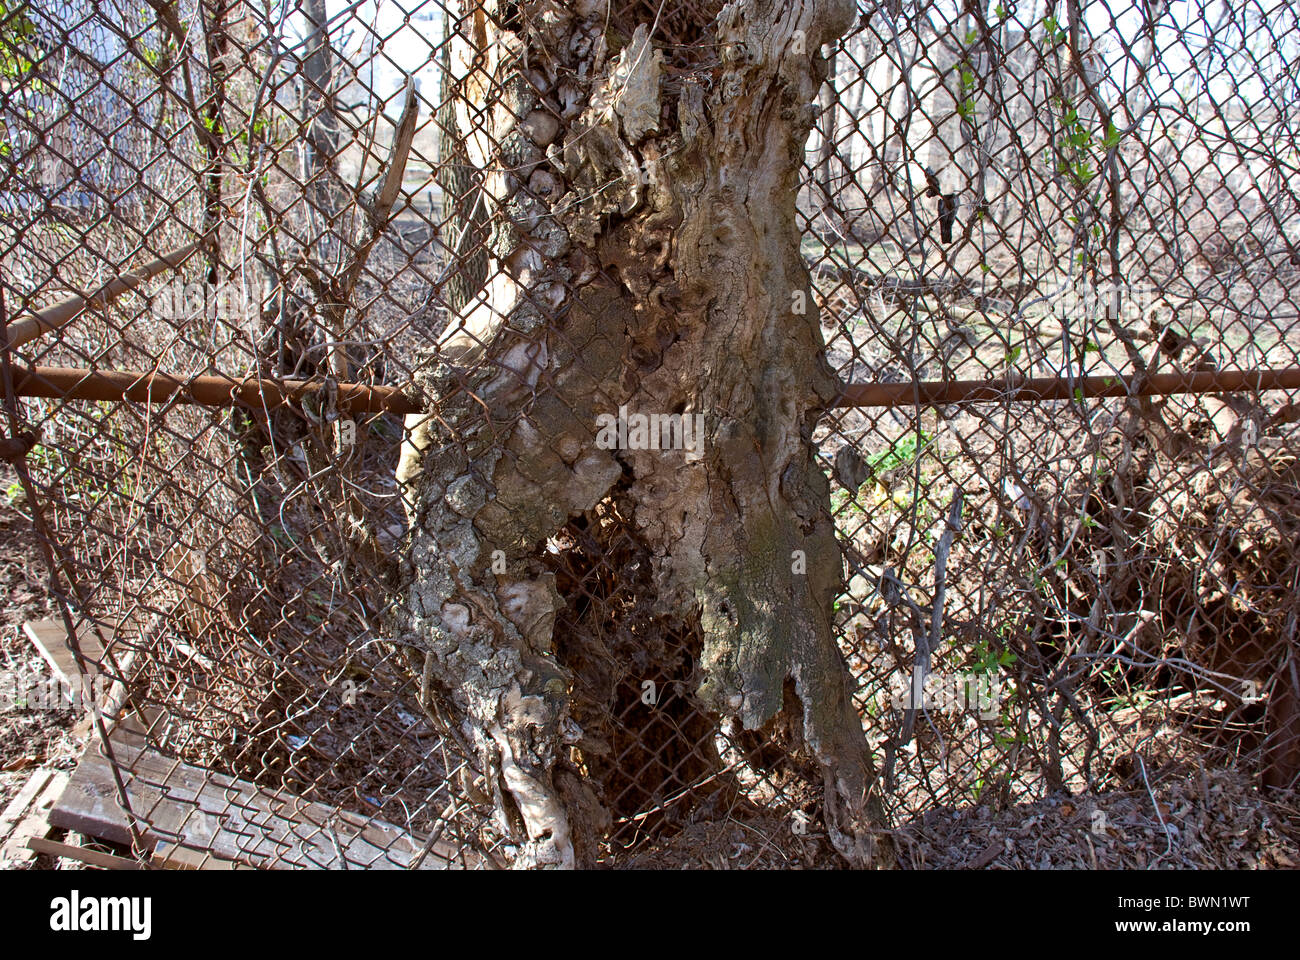 Eine aufgespießte alten Baumstamm in einem Maschendrahtzaun gewachsen, das aussieht wie ein torso Stockfoto